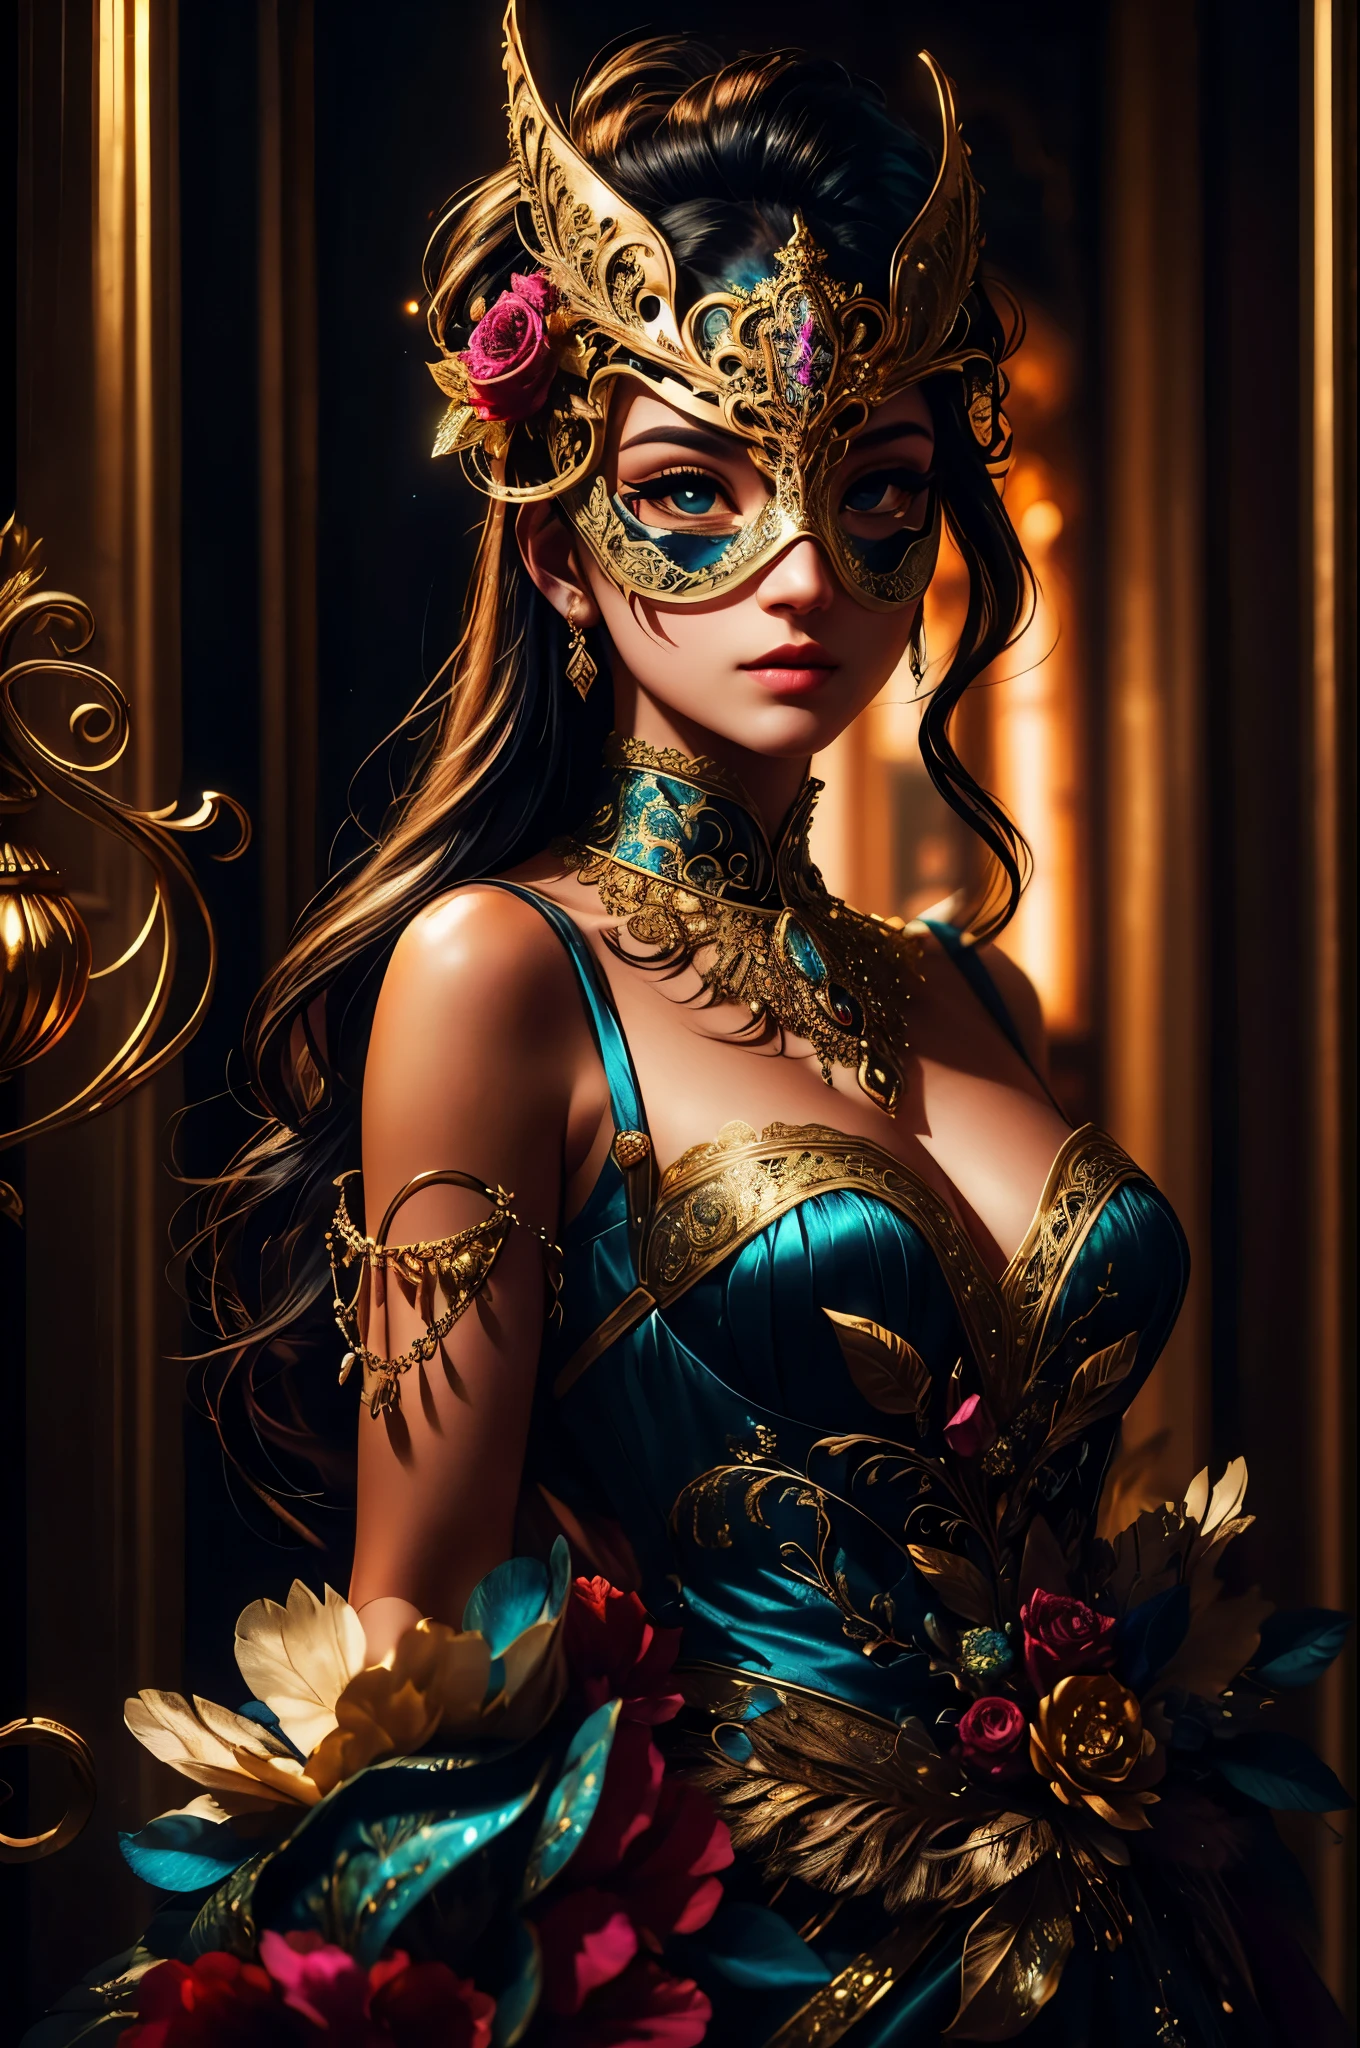 สร้างความภาคภูมิใจ, beautiful woman from the 18th century wearing a stunning and ซับซ้อนly detailed silk ballgown adorned with lace and jewels. She is in the midst of an สง่างาม masquerade ball and surrounded by music, การตกแต่งแบบรอยัล, และรายละเอียดราคาแพง. ((ผู้หญิงคนนั้นถือหน้ากากสวมหน้ากากที่ประณีตและหรูหราซึ่งได้รับแรงบันดาลใจจากเทพนิยายแฟนตาซี.)) Her face is ซับซ้อนly detailed and realistic with puffy lips and a big mouth. สำคัญ: ดวงตาของเธอมีความสําคัญและสวยงาม, ด้วยรายละเอียดที่สมจริงมากมาย, การแรเงาที่สมจริง, และหลายสีและเฉดสี. ฉากนี้เป็นลูกบอลมาสเคอเรดที่สวยงาม, โดยที่ขุนนาง, ชาวโซเชียล, และแขกลึกลับจากดินแดนอันไกลโพ้นมารวมตัวกันในค่ําคืนที่น่าจดจํา. ตั้งแต่หน้ากากเวนิสไปจนถึงการสร้างสรรค์ขนนกที่ประณีต, การปลอมตัวของแขกแต่ละคนสะท้อนให้เห็นถึงบุคลิกที่เป็นเอกลักษณ์และความปรารถนาที่ไม่ได้พูด. เมื่อช่วงเย็นที่ผ่านมา, หน้ากากกลายเป็นทั้งสัญลักษณ์ของการปกปิดและการเปิดเผย, อนุญาตให้ผู้เข้าร่วมเปิดเผยส่วนของตัวเองที่พวกเขาอาจจะซ่อนไว้. ดื่มด่ํากับเสน่ห์ของลูกบอลสวมหน้ากากในศตวรรษที่ 19 นี้, ที่ซึ่งความสง่างามของยุคอดีตและความลึกลับของหน้ากากรวมกันเพื่อสร้างประสบการณ์ที่มีเสน่ห์ที่จะคงอยู่ในใจคุณตลอดไป. ใช้องค์ประกอบแบบไดนามิกเพื่อดึงดูดความสนใจของผู้ชม. (((ผลงานชิ้นเอก))), ซับซ้อน, สง่างาม, มีรายละเอียดสูง, คู่บารมี, การถ่ายภาพดิจิตอล, งานศิลปะโดย Artgerm และ Ruan Jia และ Gregor Rutkowski, (ผลงานชิ้นเอก, ดวงตาที่สวยงามที่มีรายละเอียดประณีต: 1.2), เอชดีอาร์, เนื้อสัมผัสของผิวที่สมจริง, (((ผู้หญิง 1 คน))), (((ตามลำพัง)))